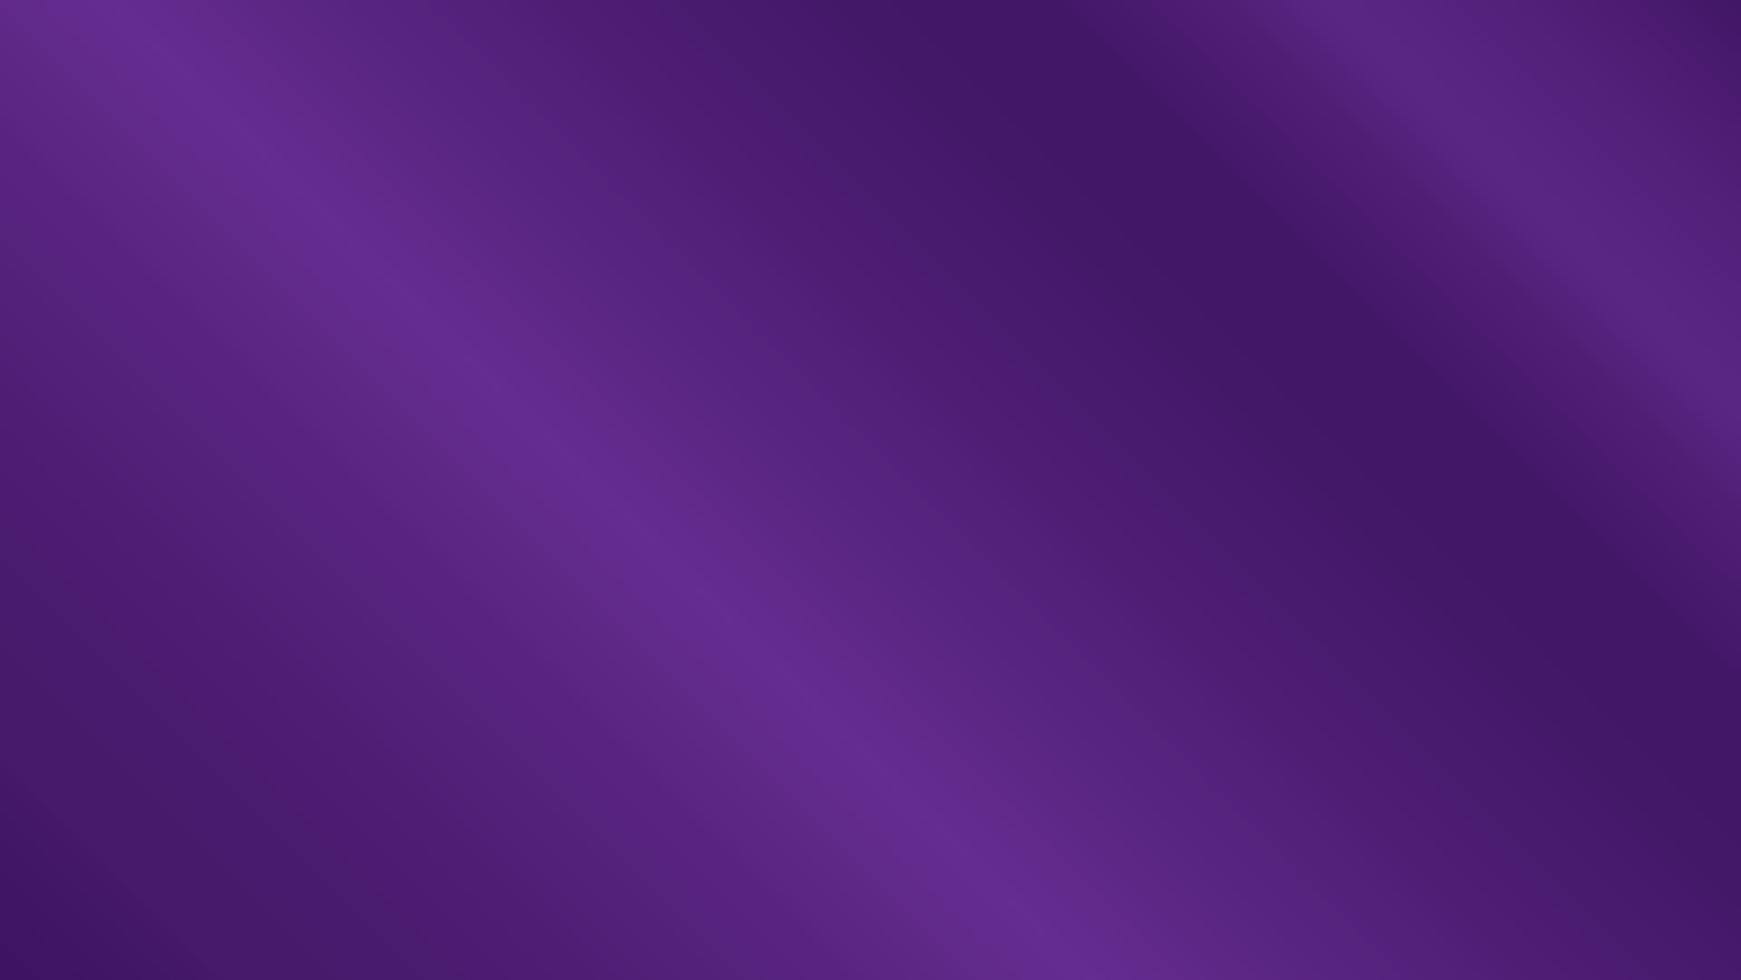 metallic purple background vector